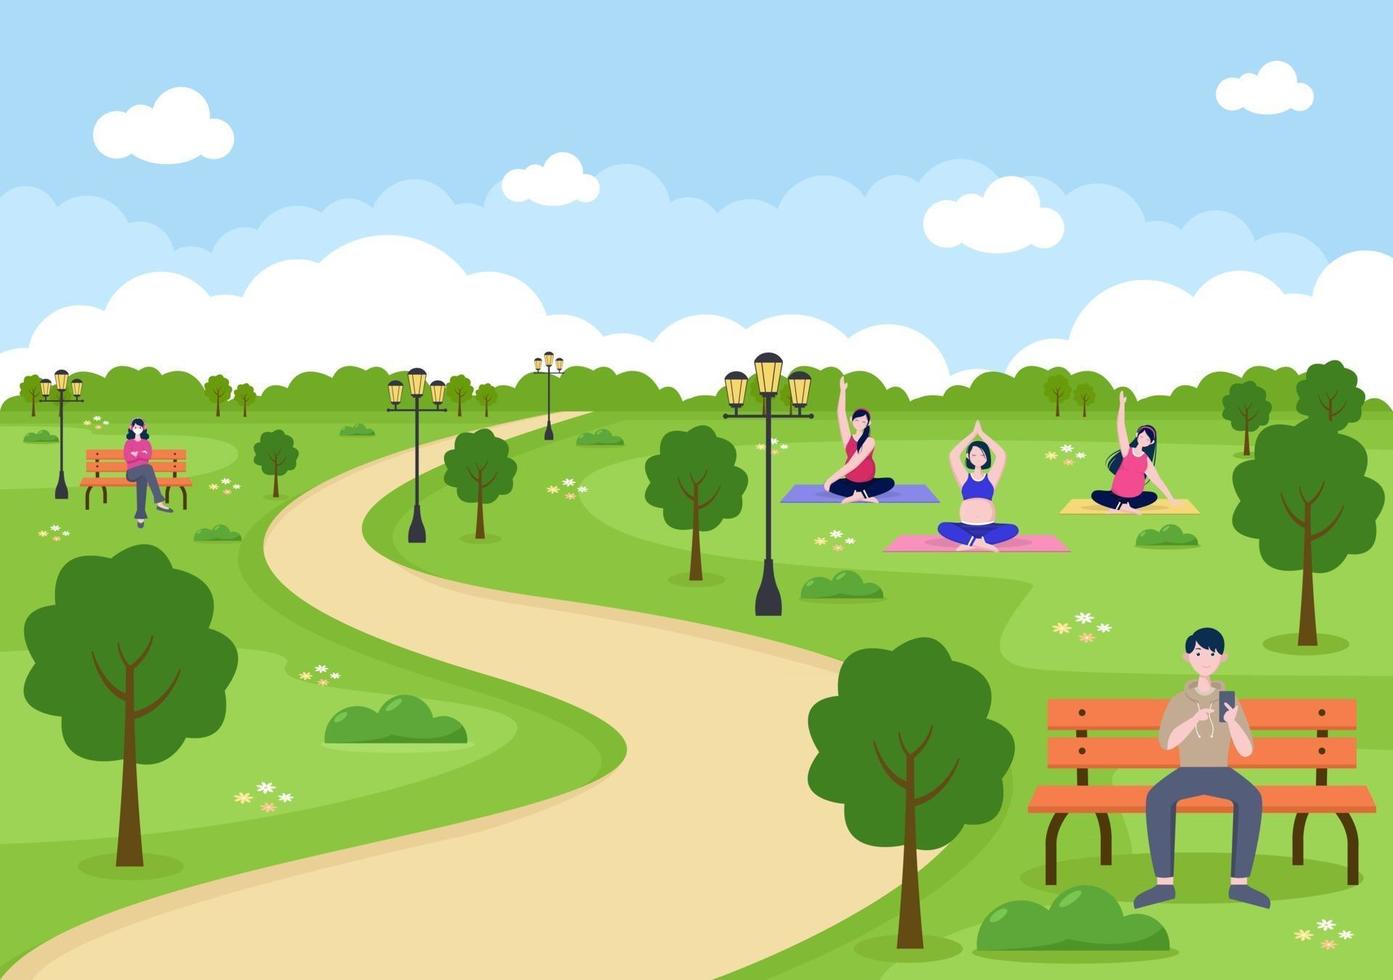 ilustração de parque da cidade para pessoas que praticam esporte, relaxamento, lazer ou recreação com árvore verde e gramado. cenário urbano vetor